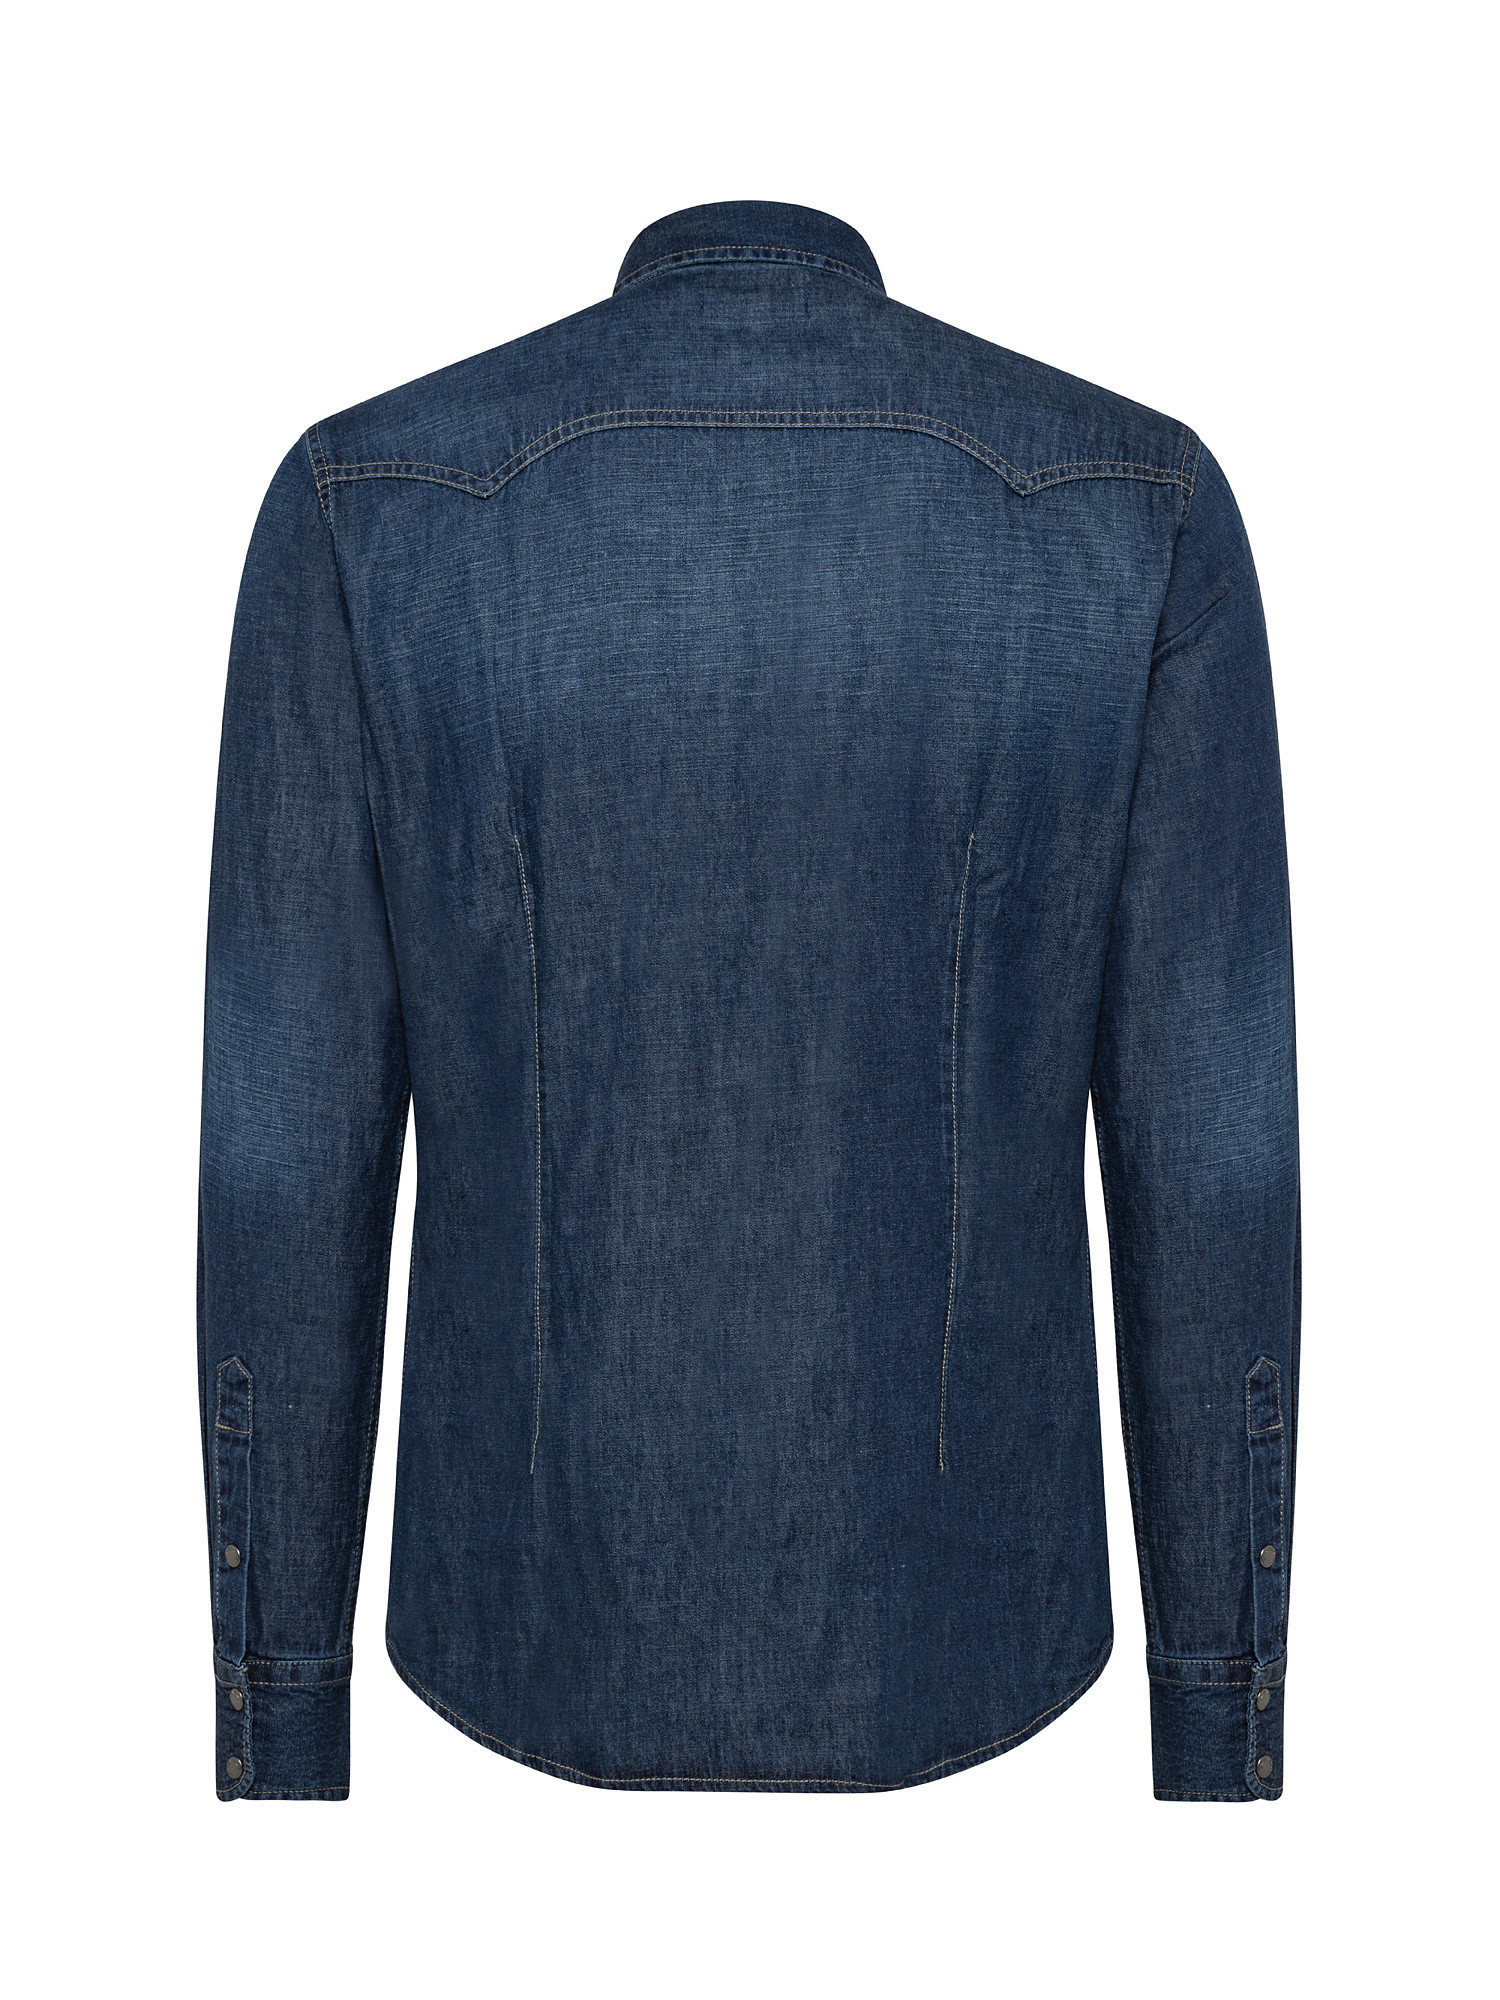 Stretch shirt in light denim, Blue, large image number 1